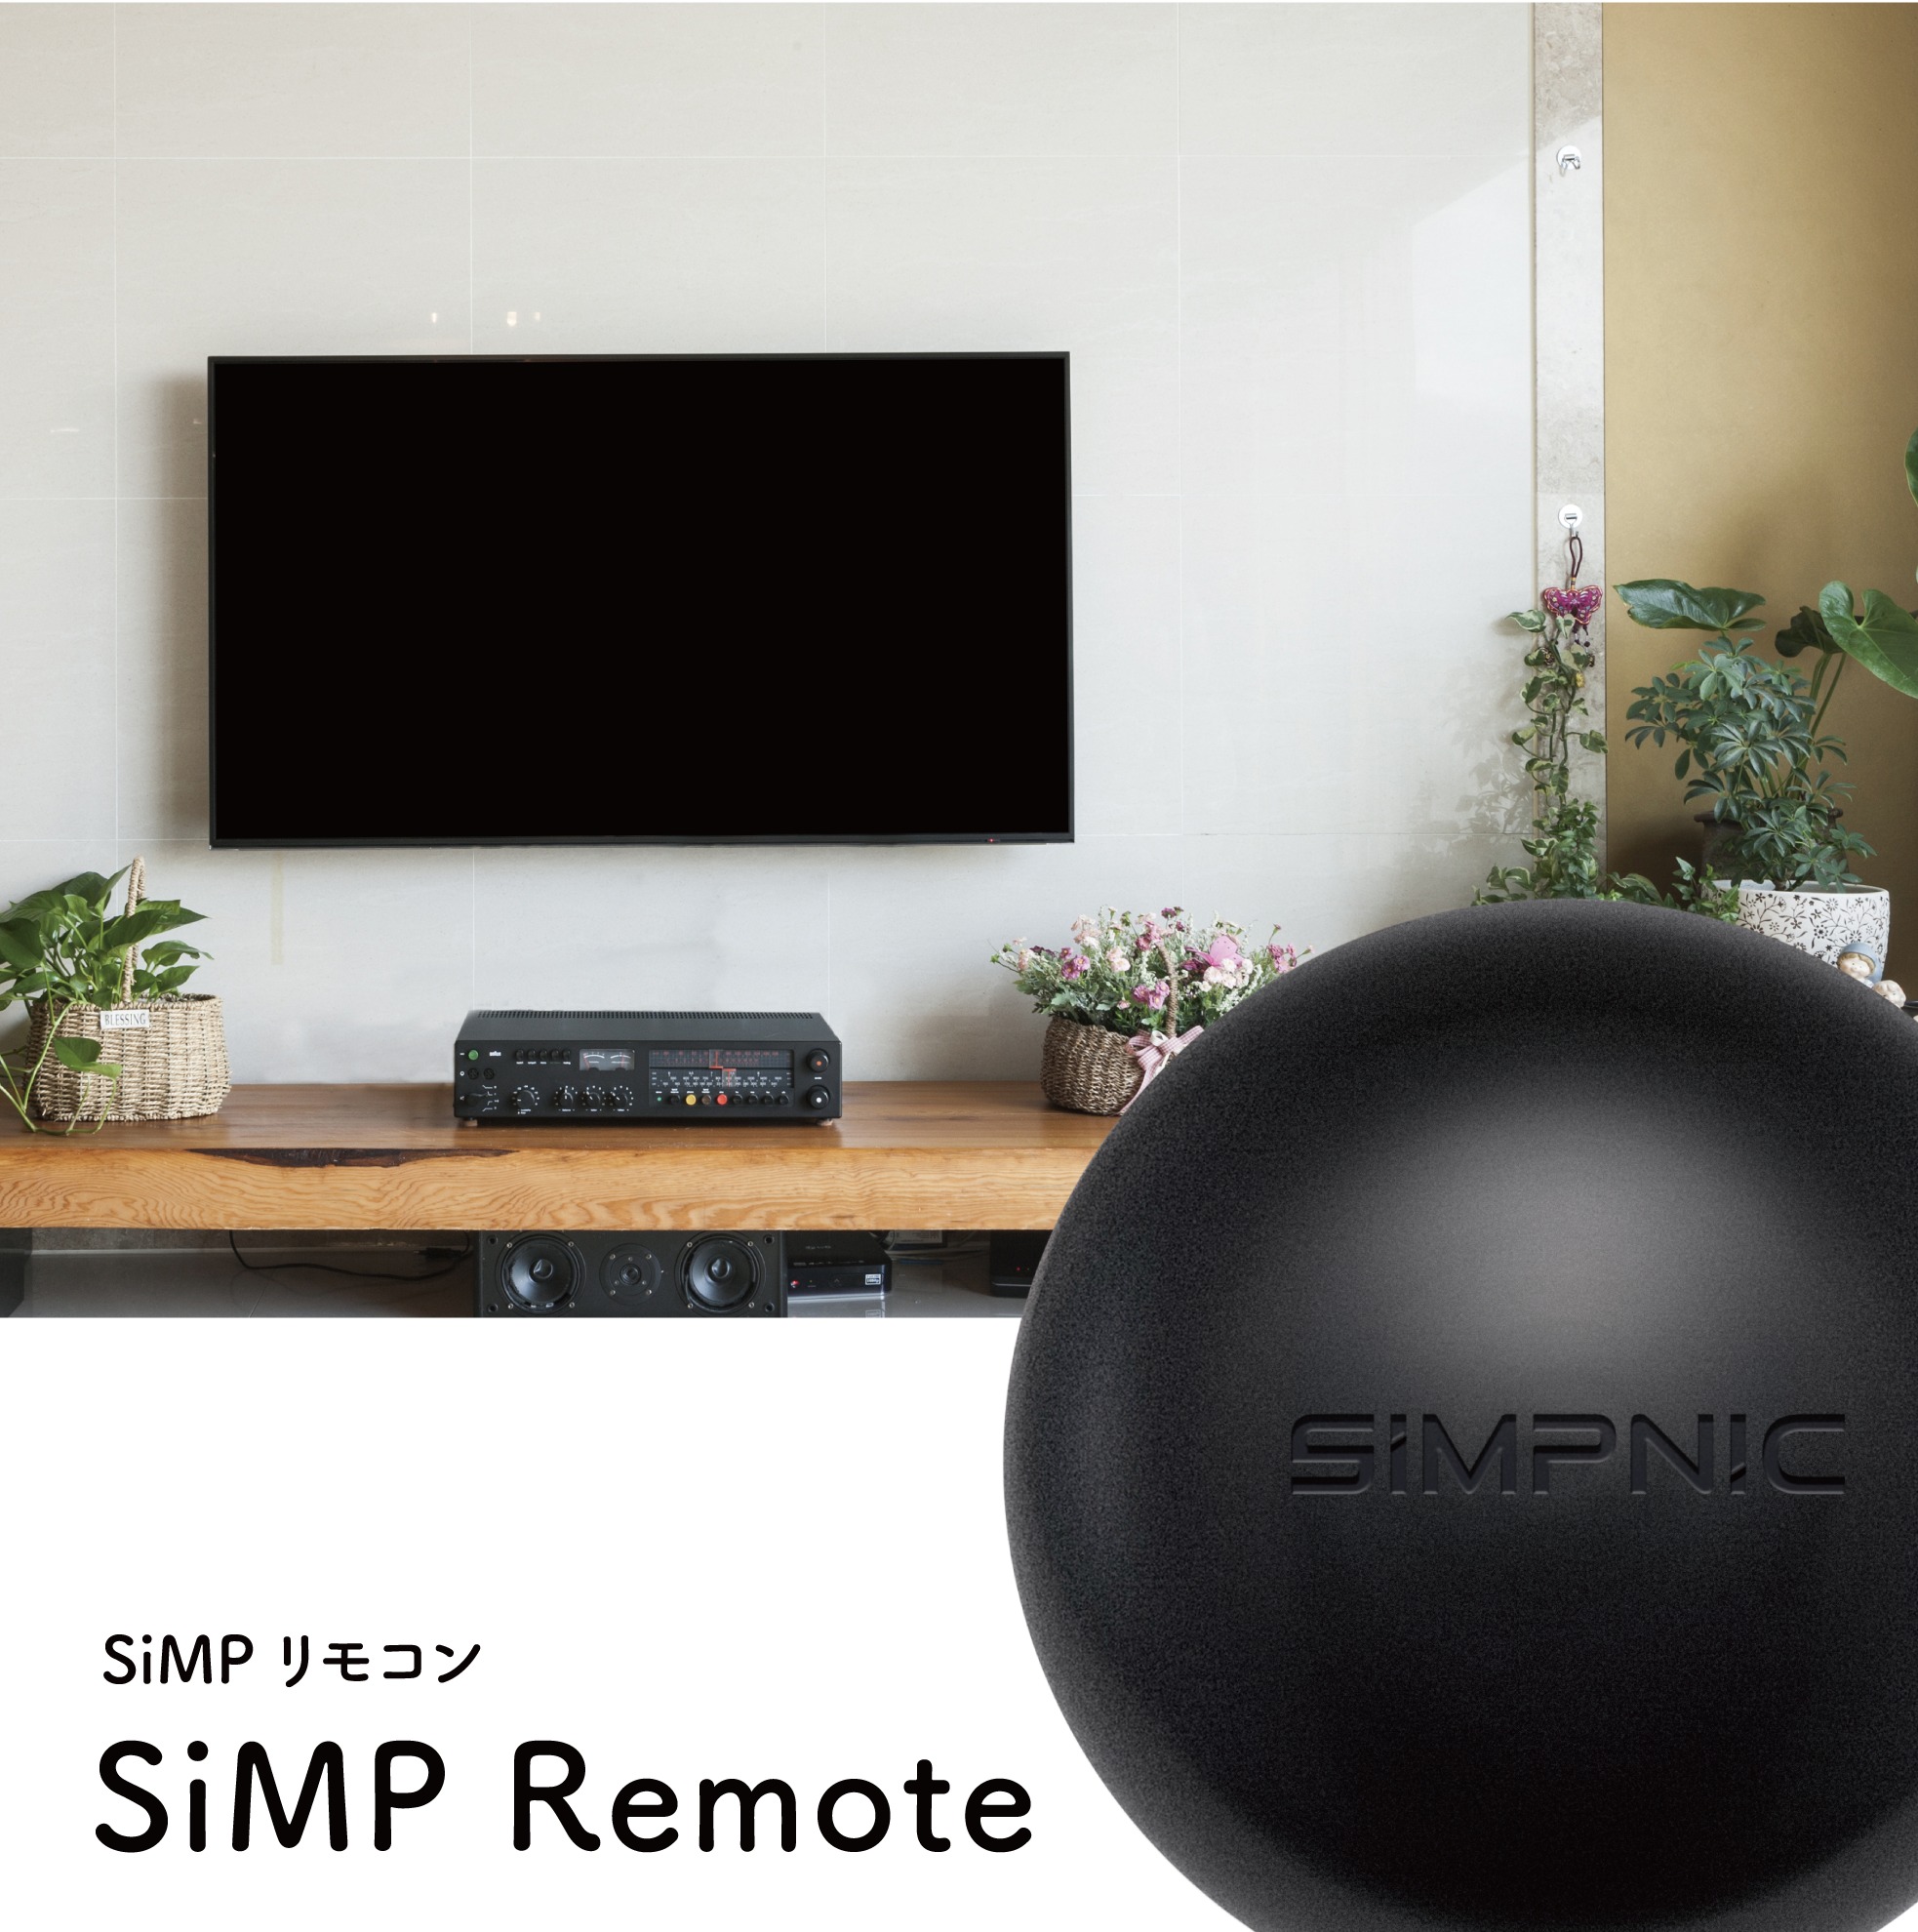 รีโมทอัจฉริยะ SiMPNiC SiMP Remote #SMARTHOME